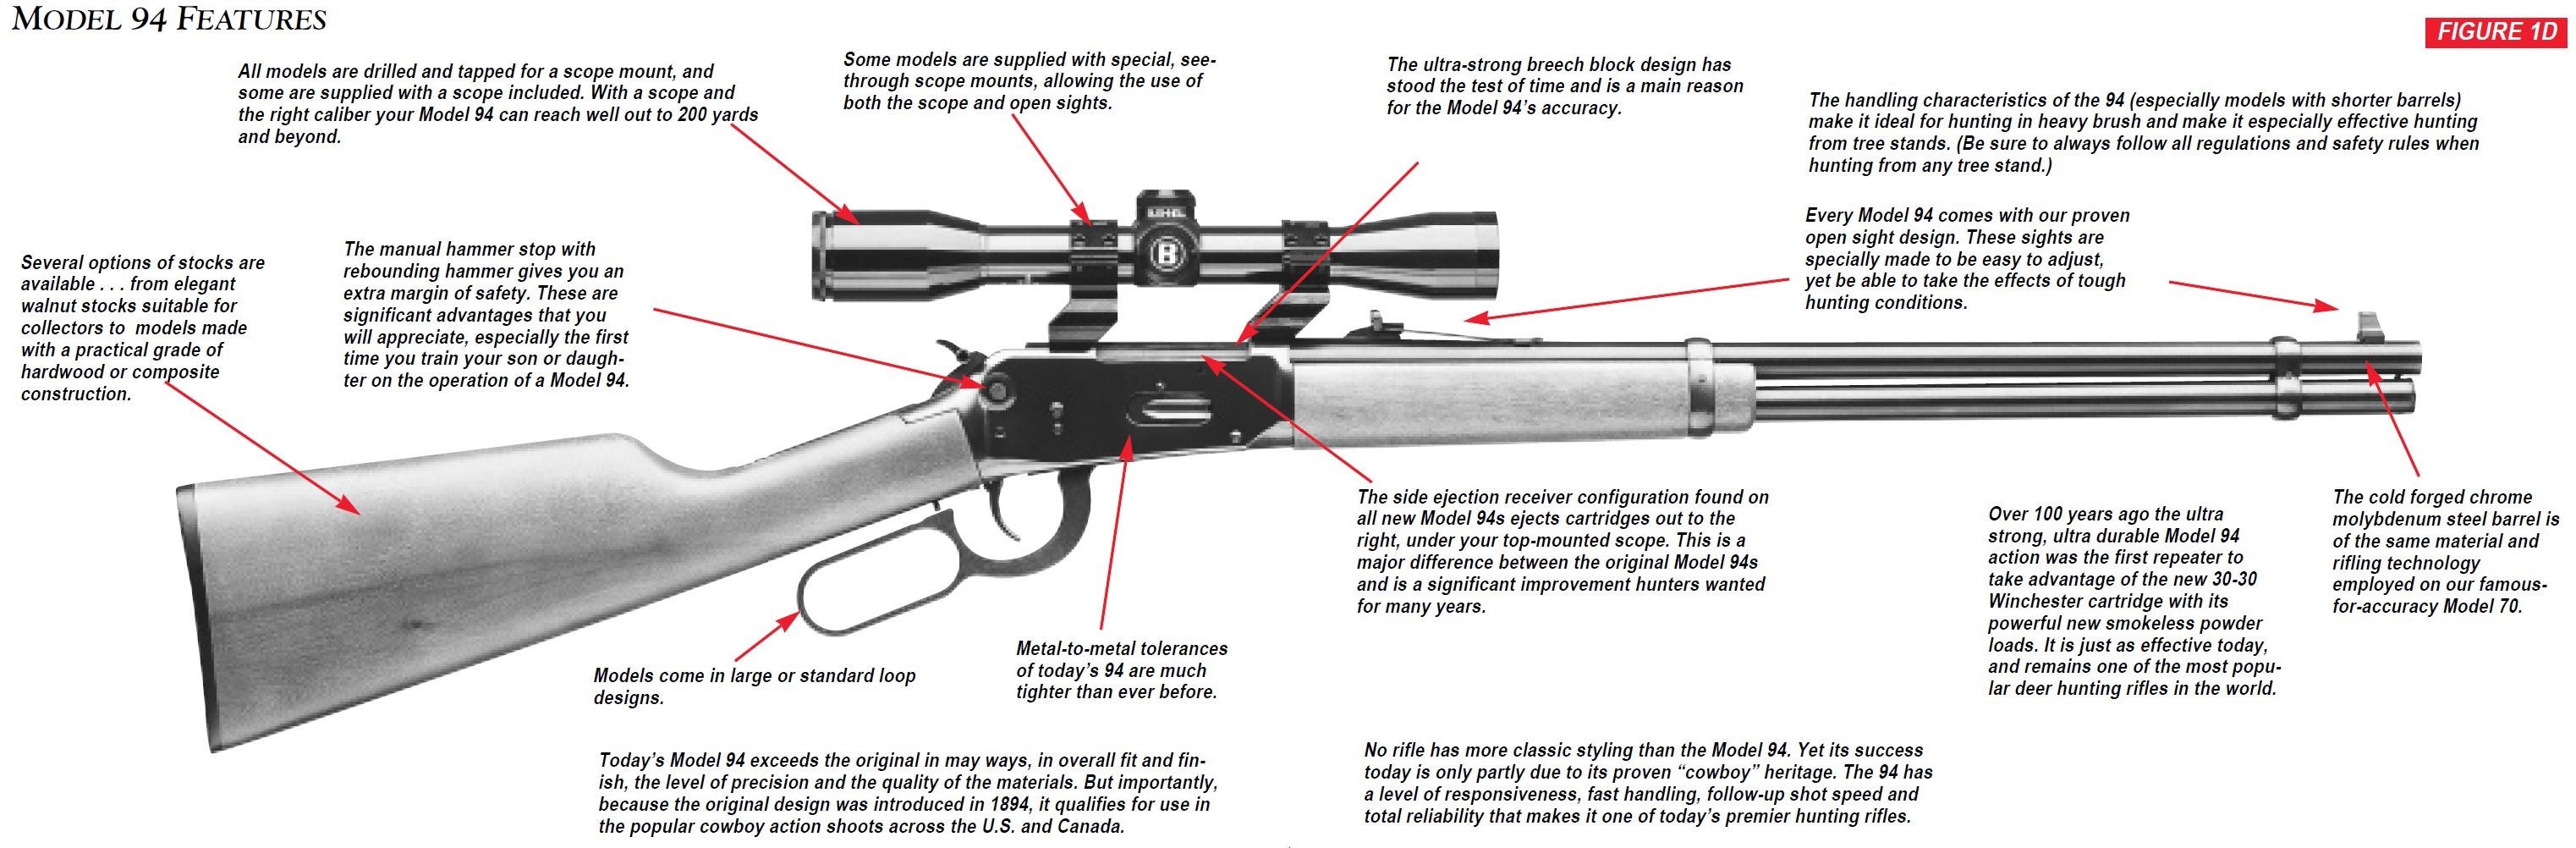 Model 94 Rifle Feature Diagram Figure 1D